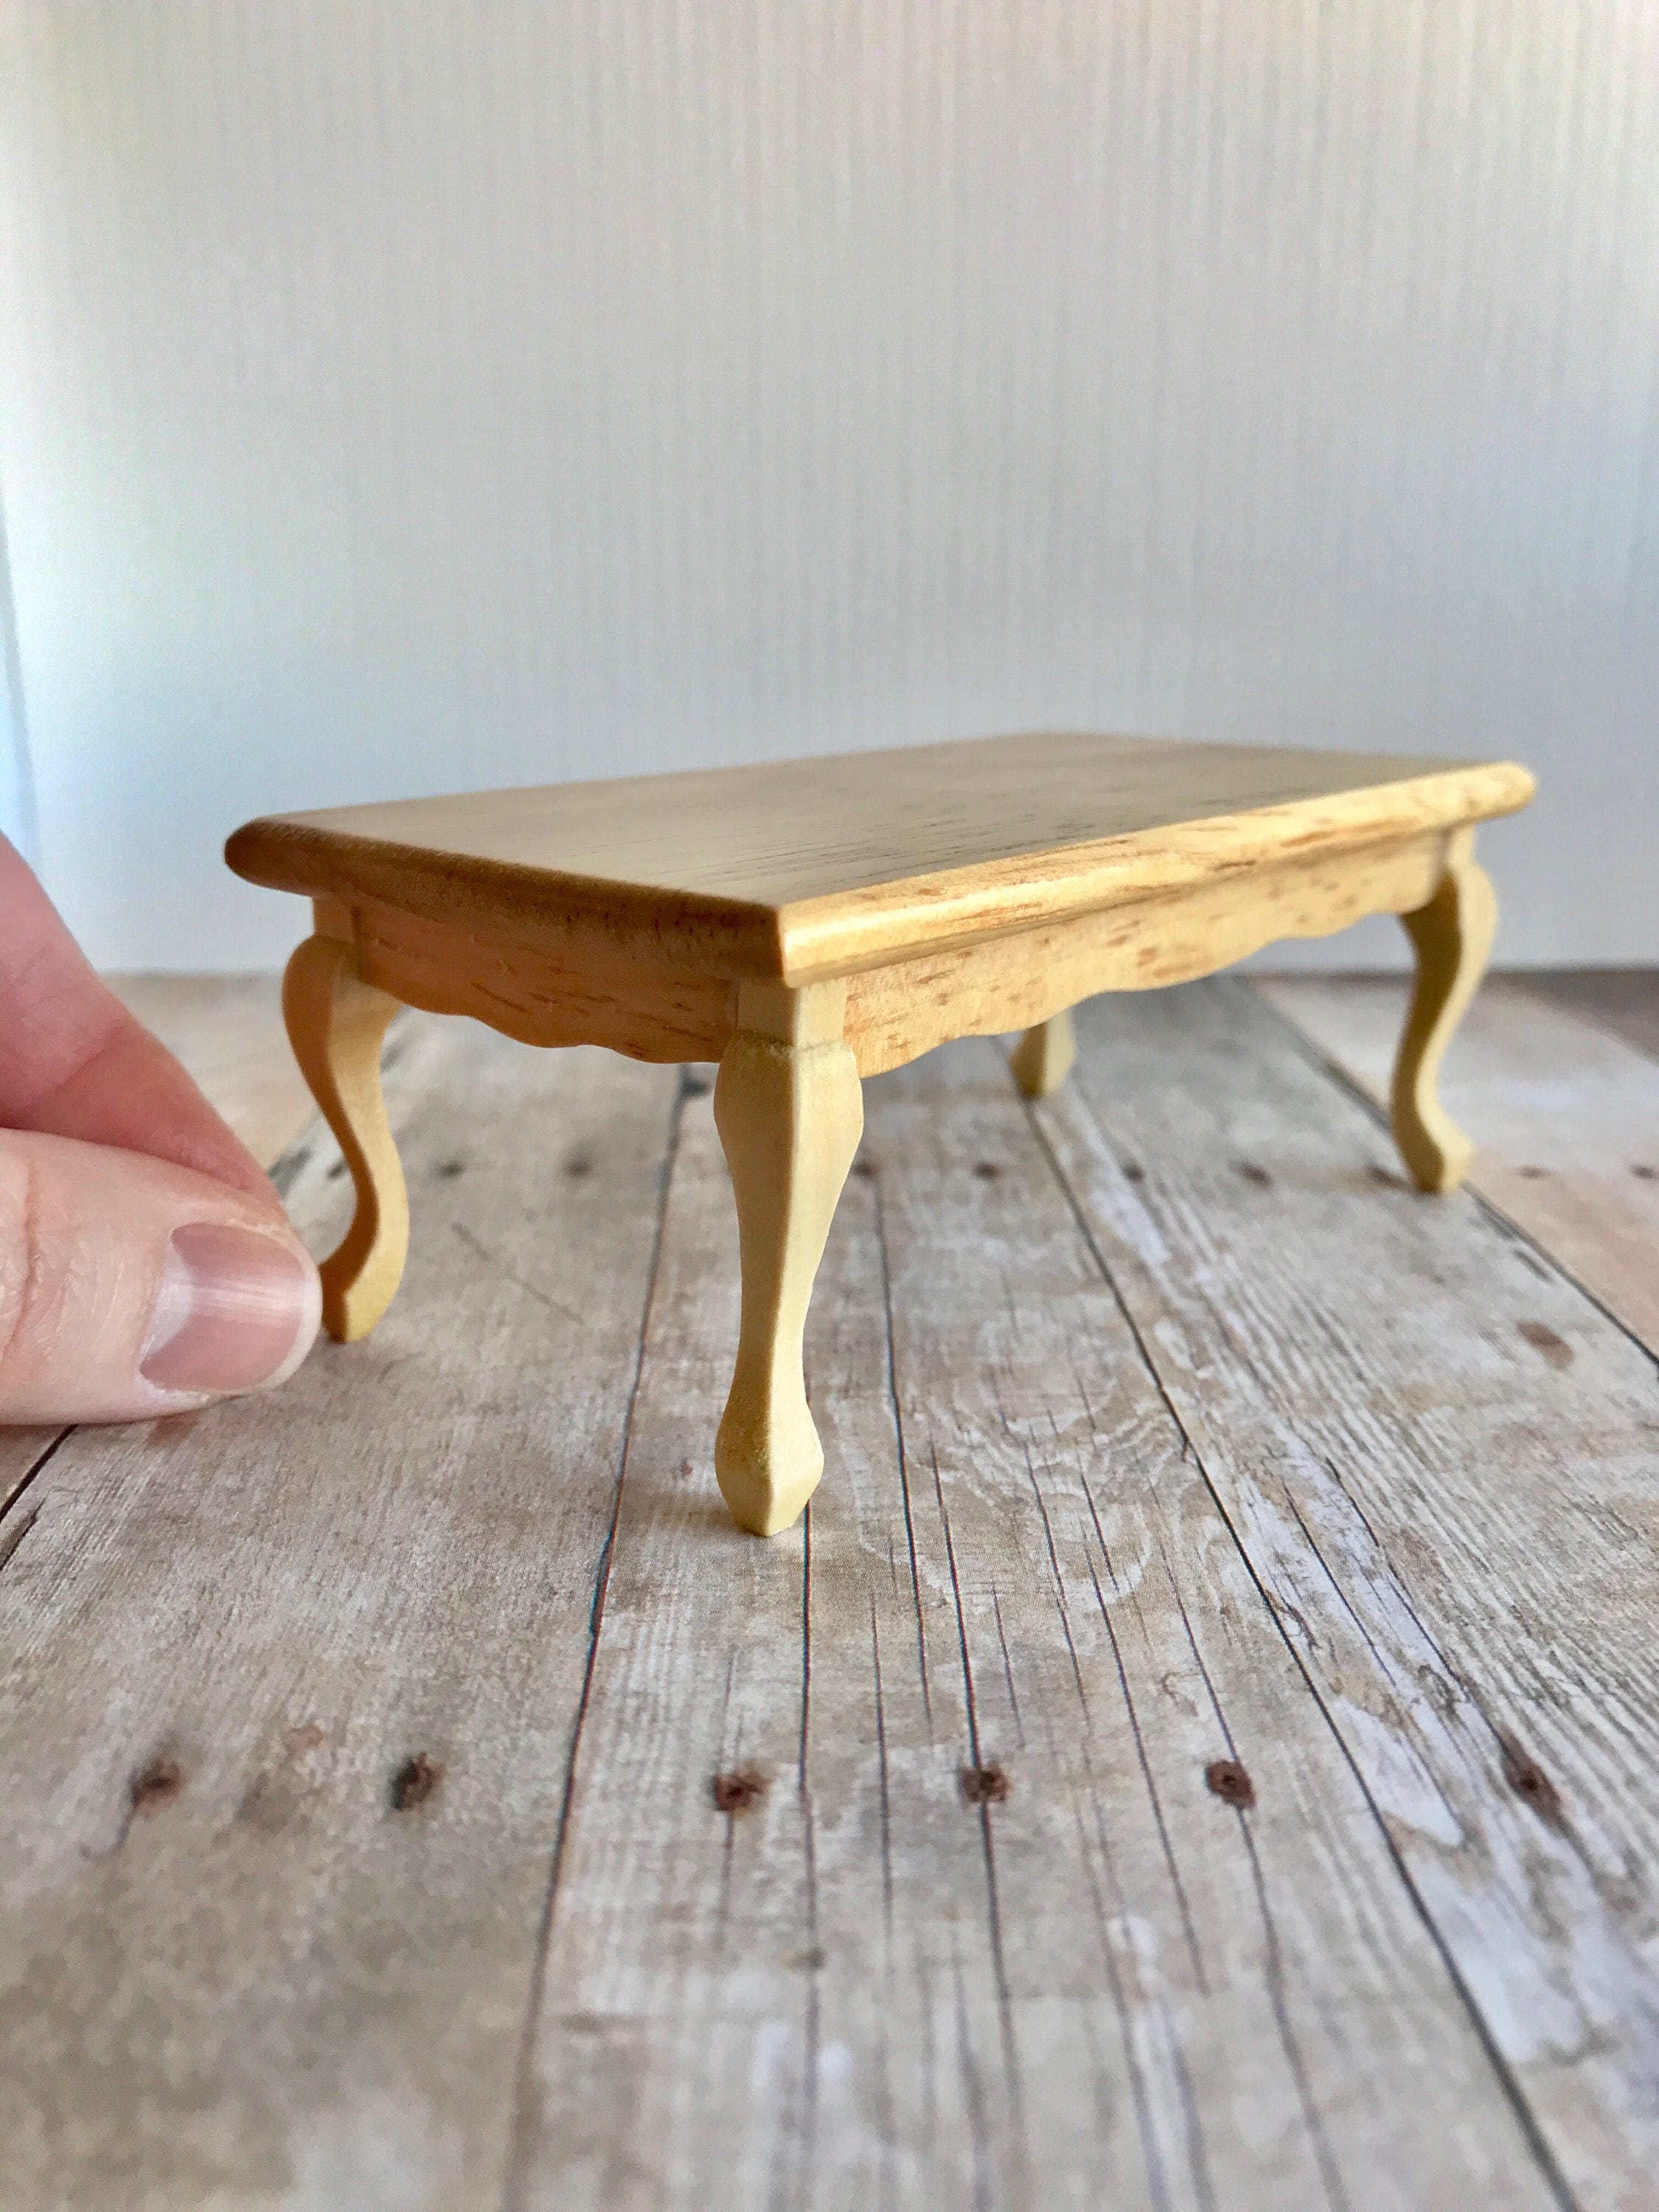 1:12 Dollhouse Tea Table Miniature Coffee Table Figurine Mini Table Model